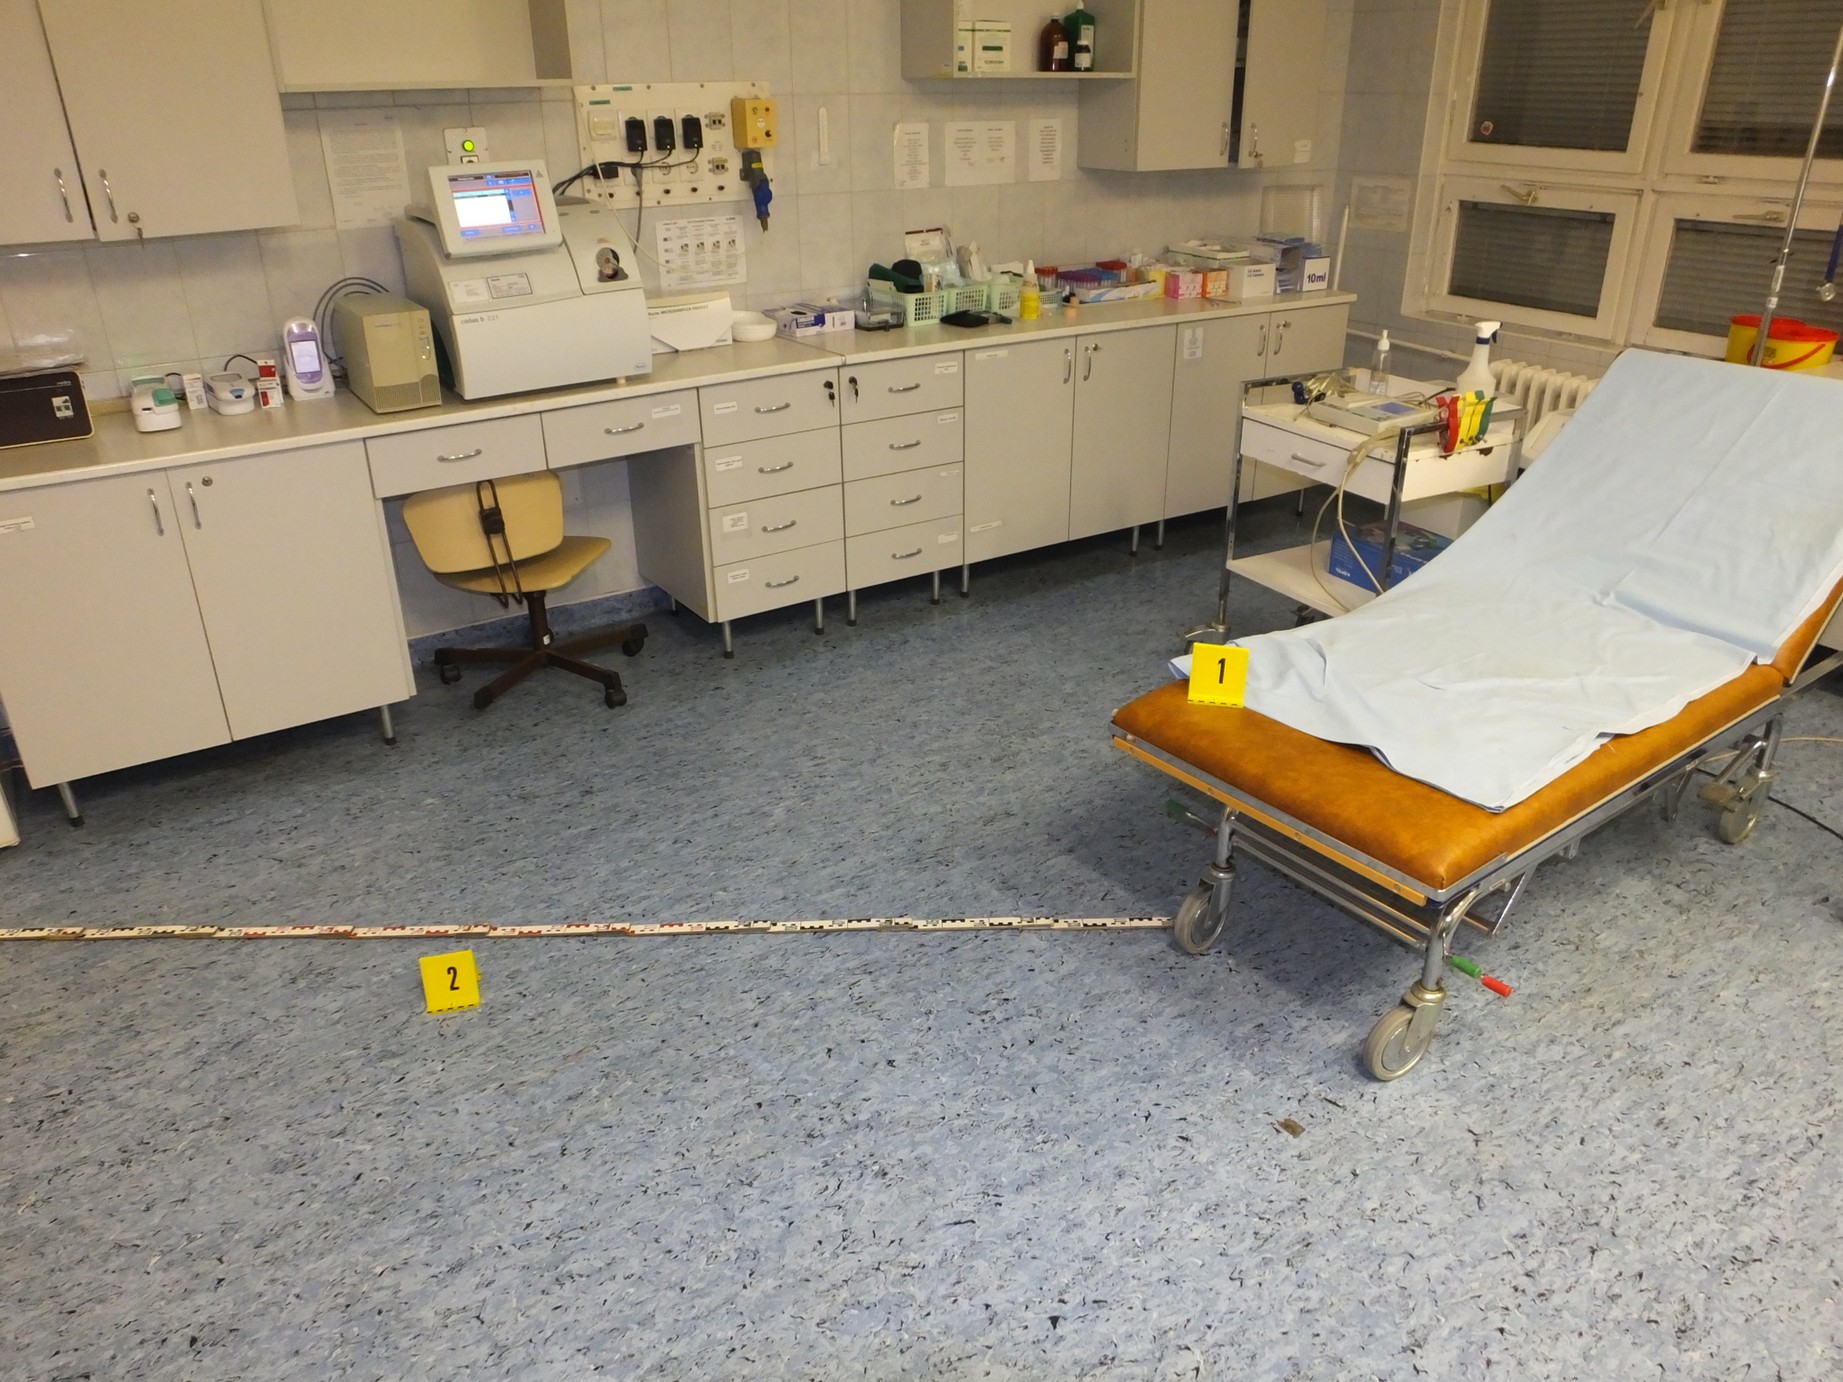 Rossz kórházi körülmények miatt halt meg egy csecsemő a Szent Imre Kórházban